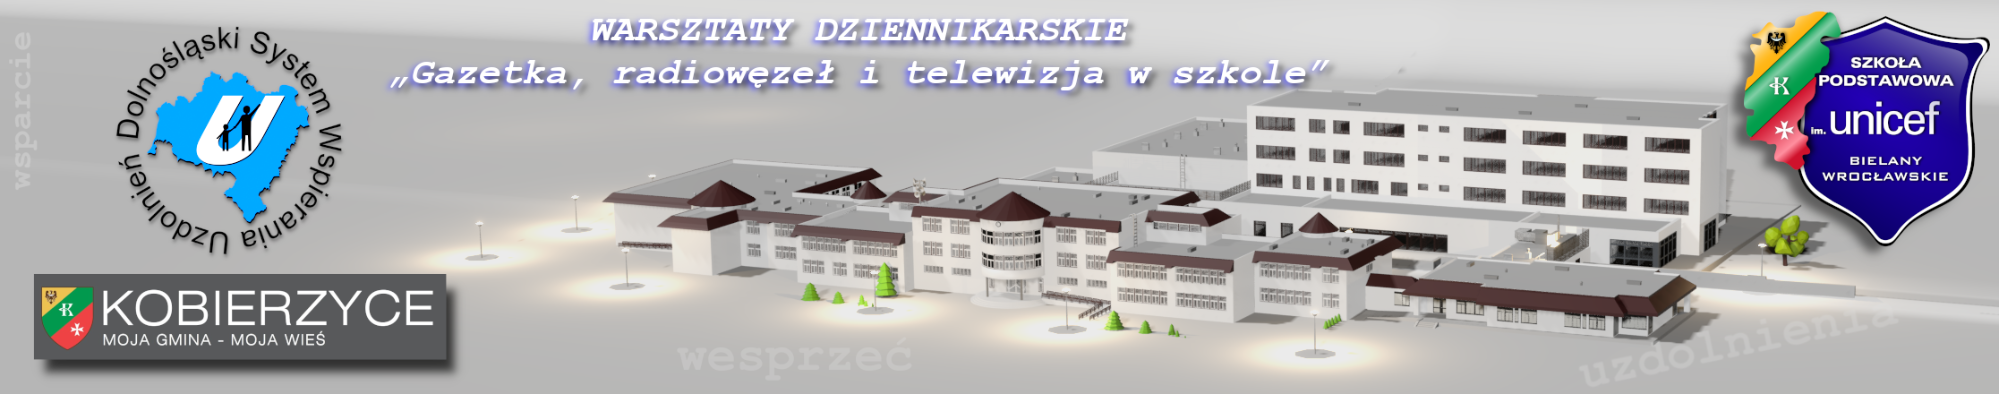 Warsztaty dziennikarskie - Gazetka, radiowęzeł i telewizja w szkole - Obrazek 1